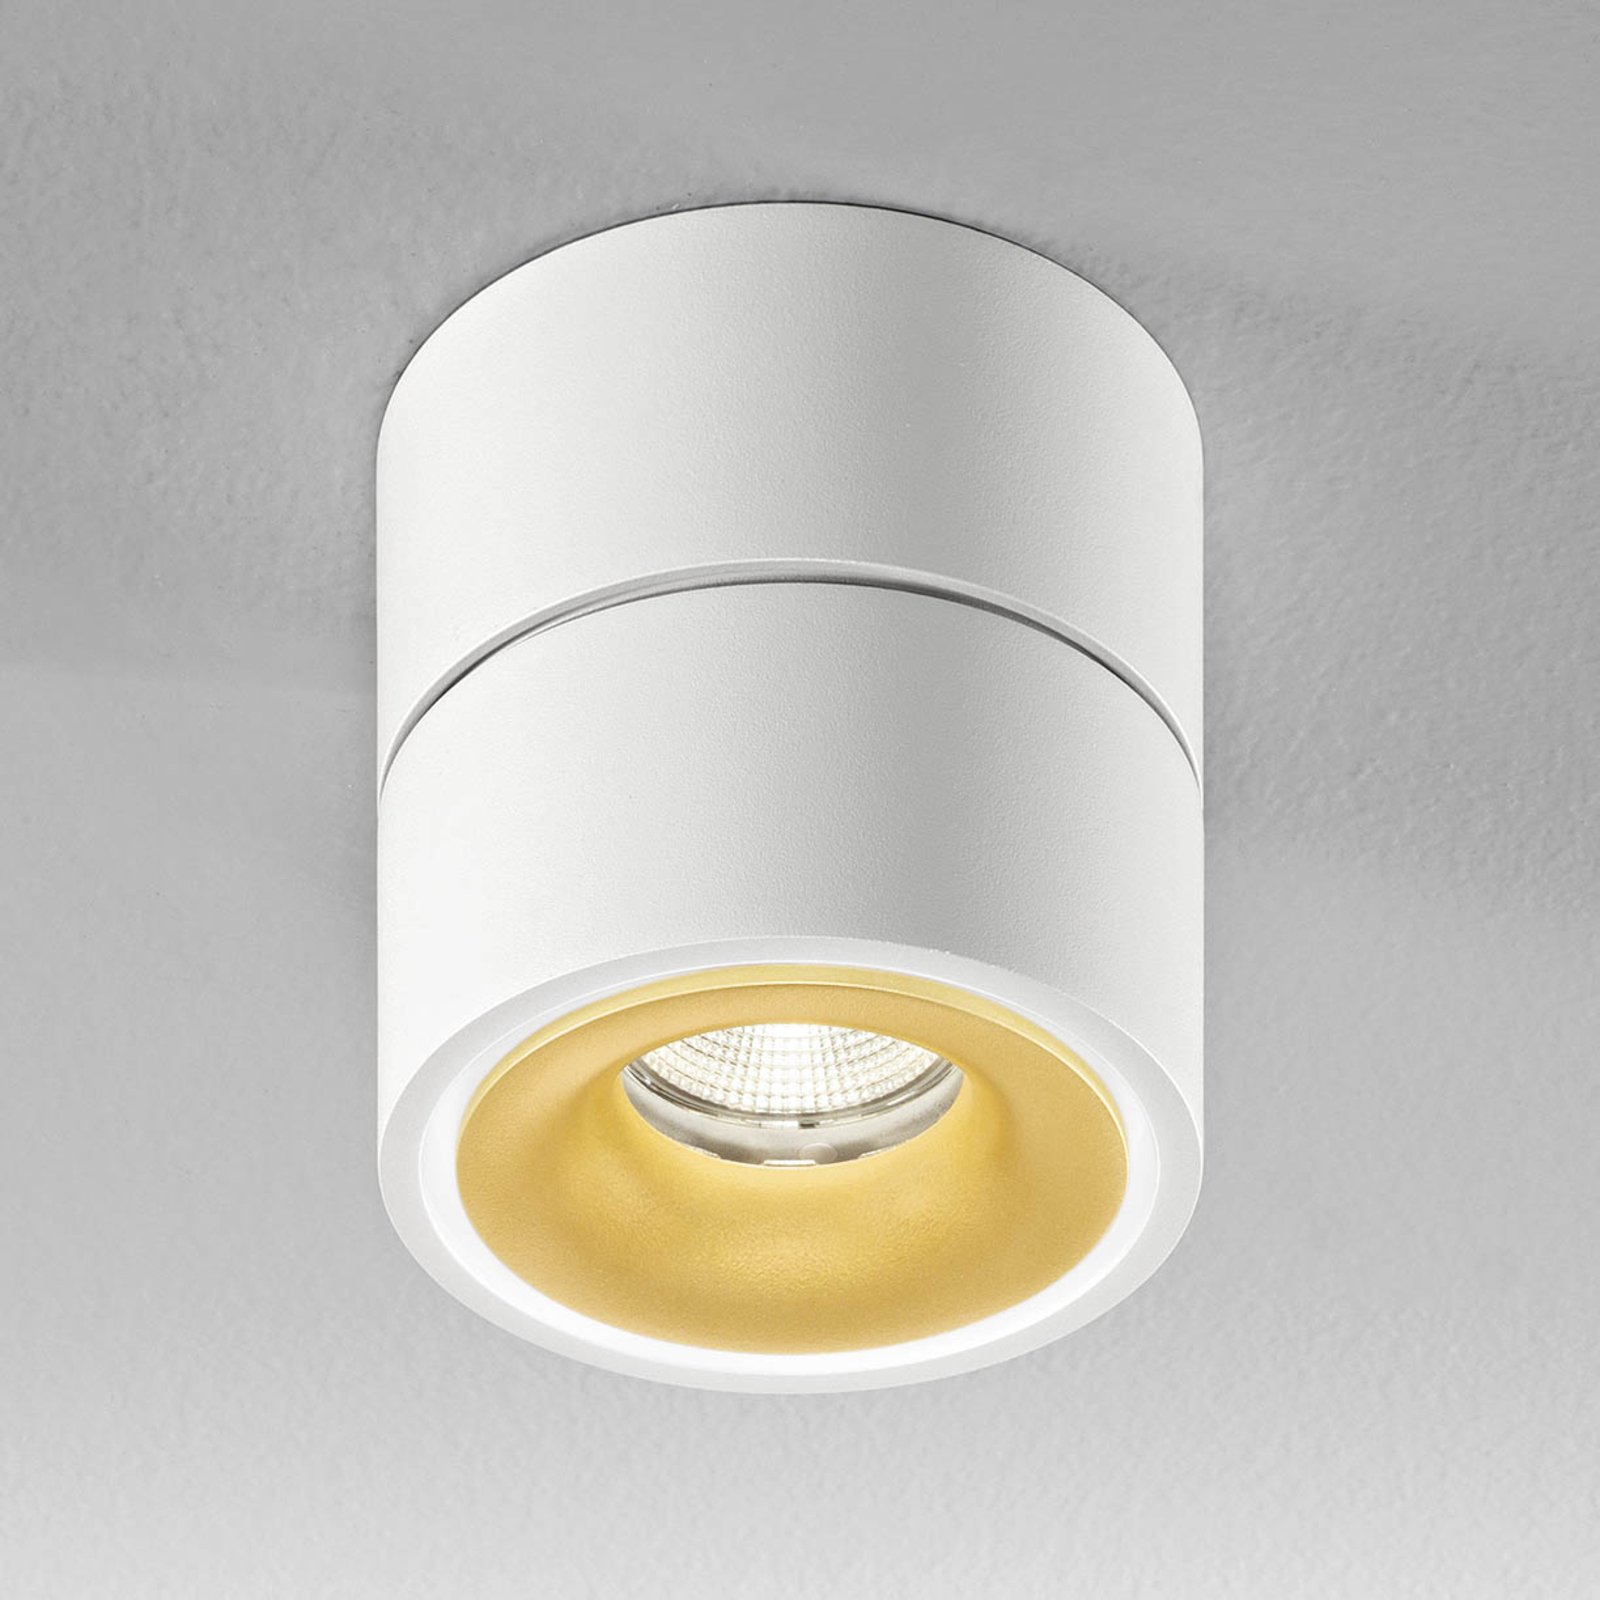 Egger Clippo S faretto da soffitto LED, bianco-oro